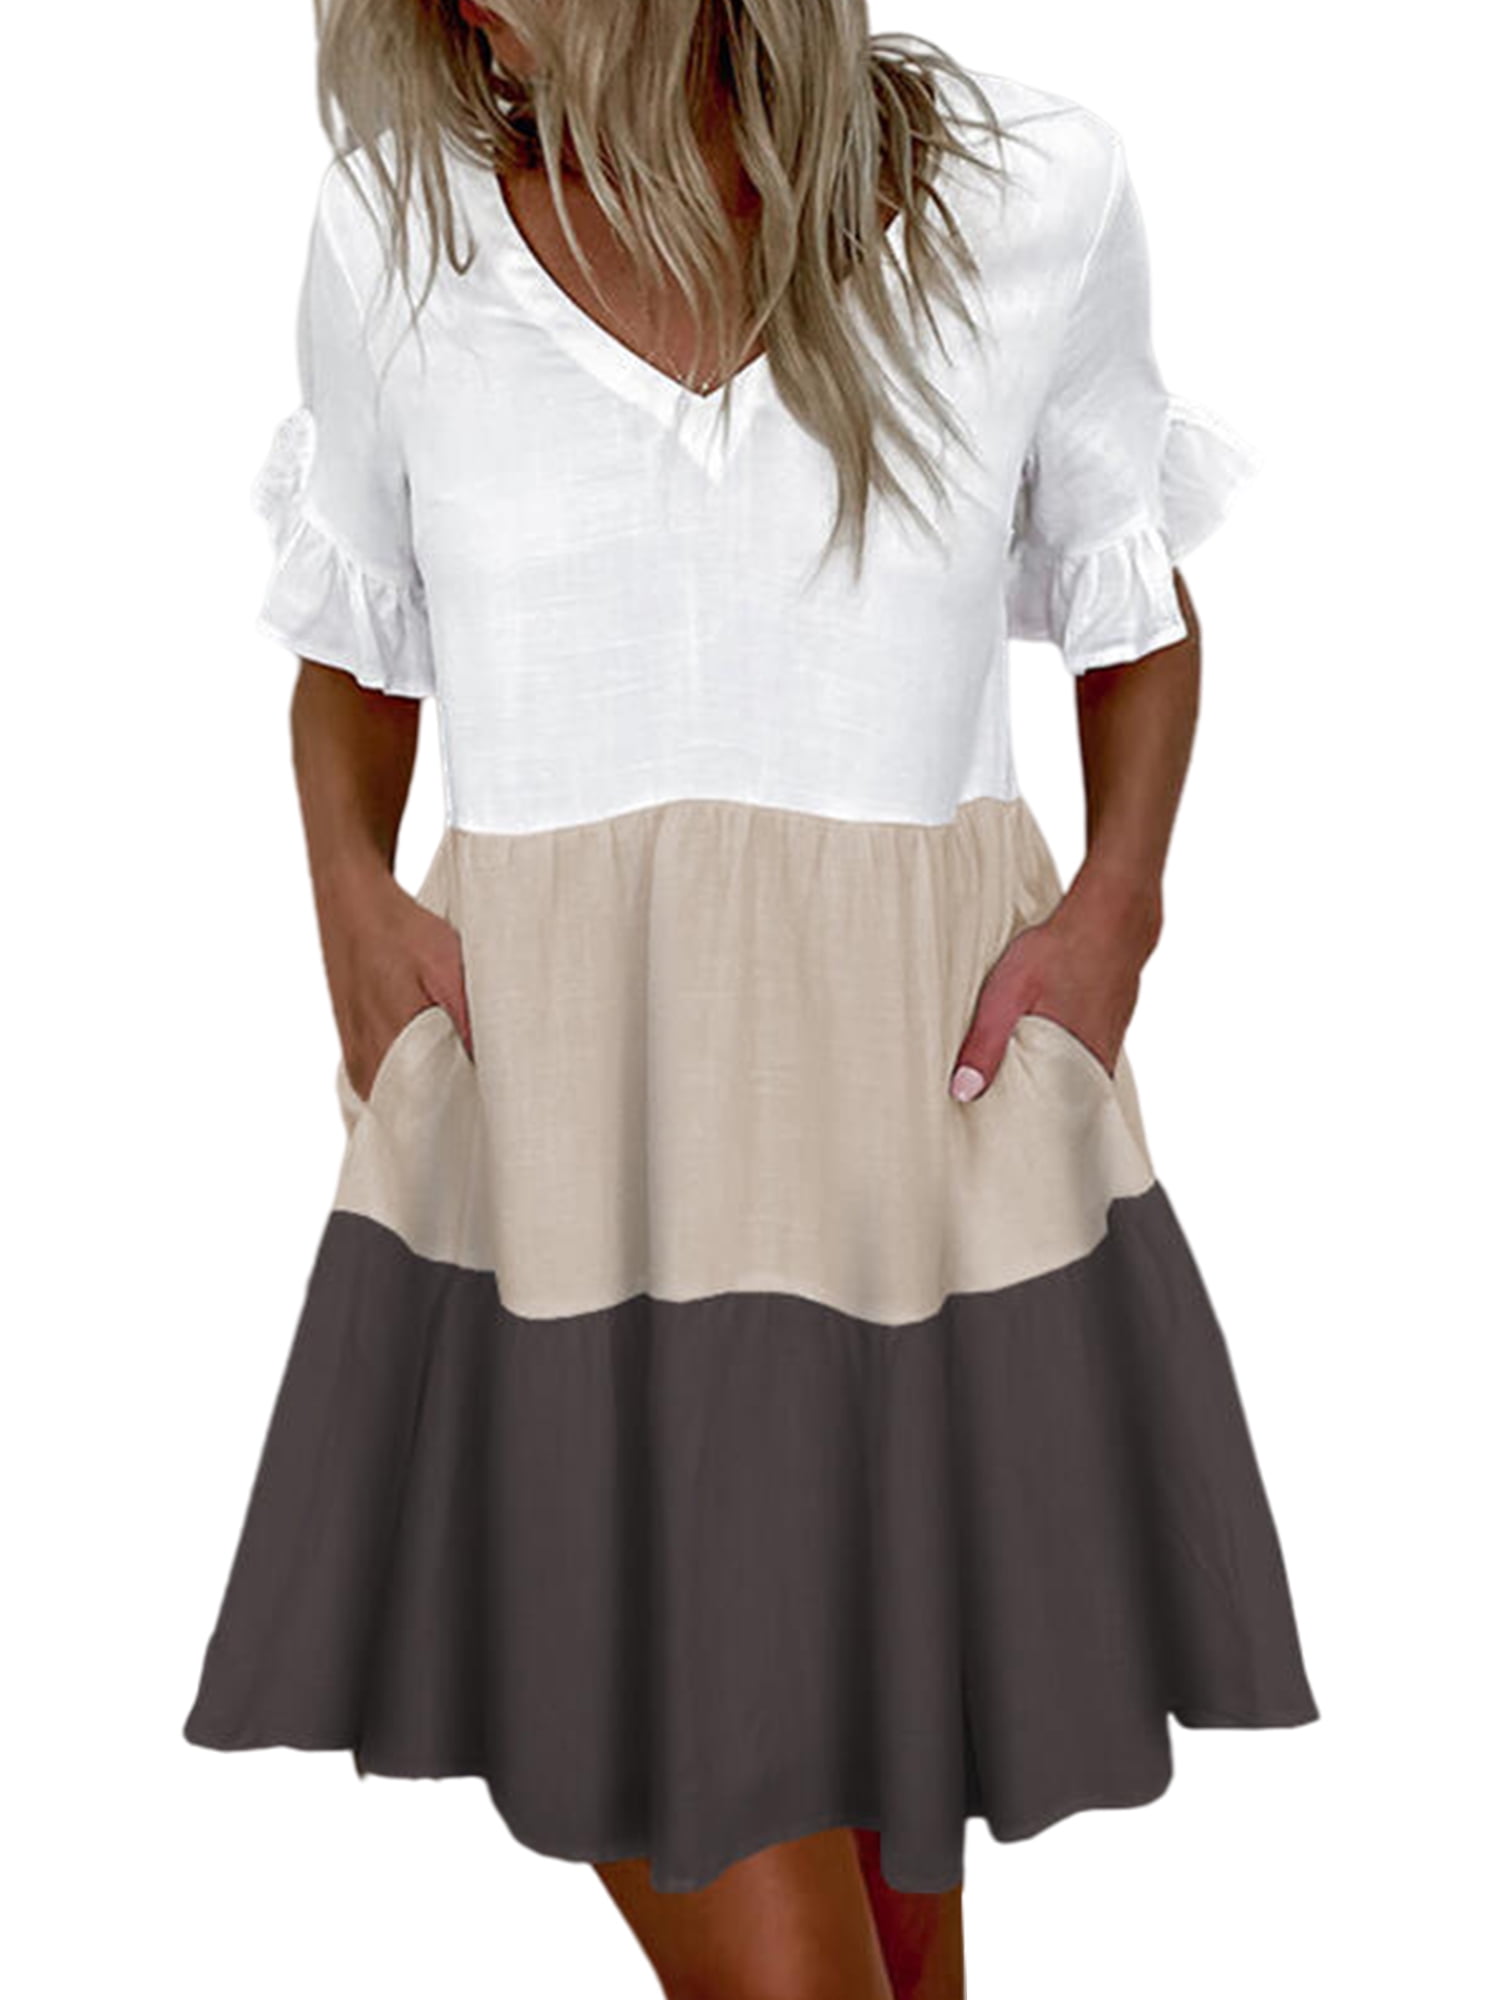 Stylish Womens Mini Dress Short Sleeve Crew Neck UK Stock Tunic Sizes 8-12 FA265 